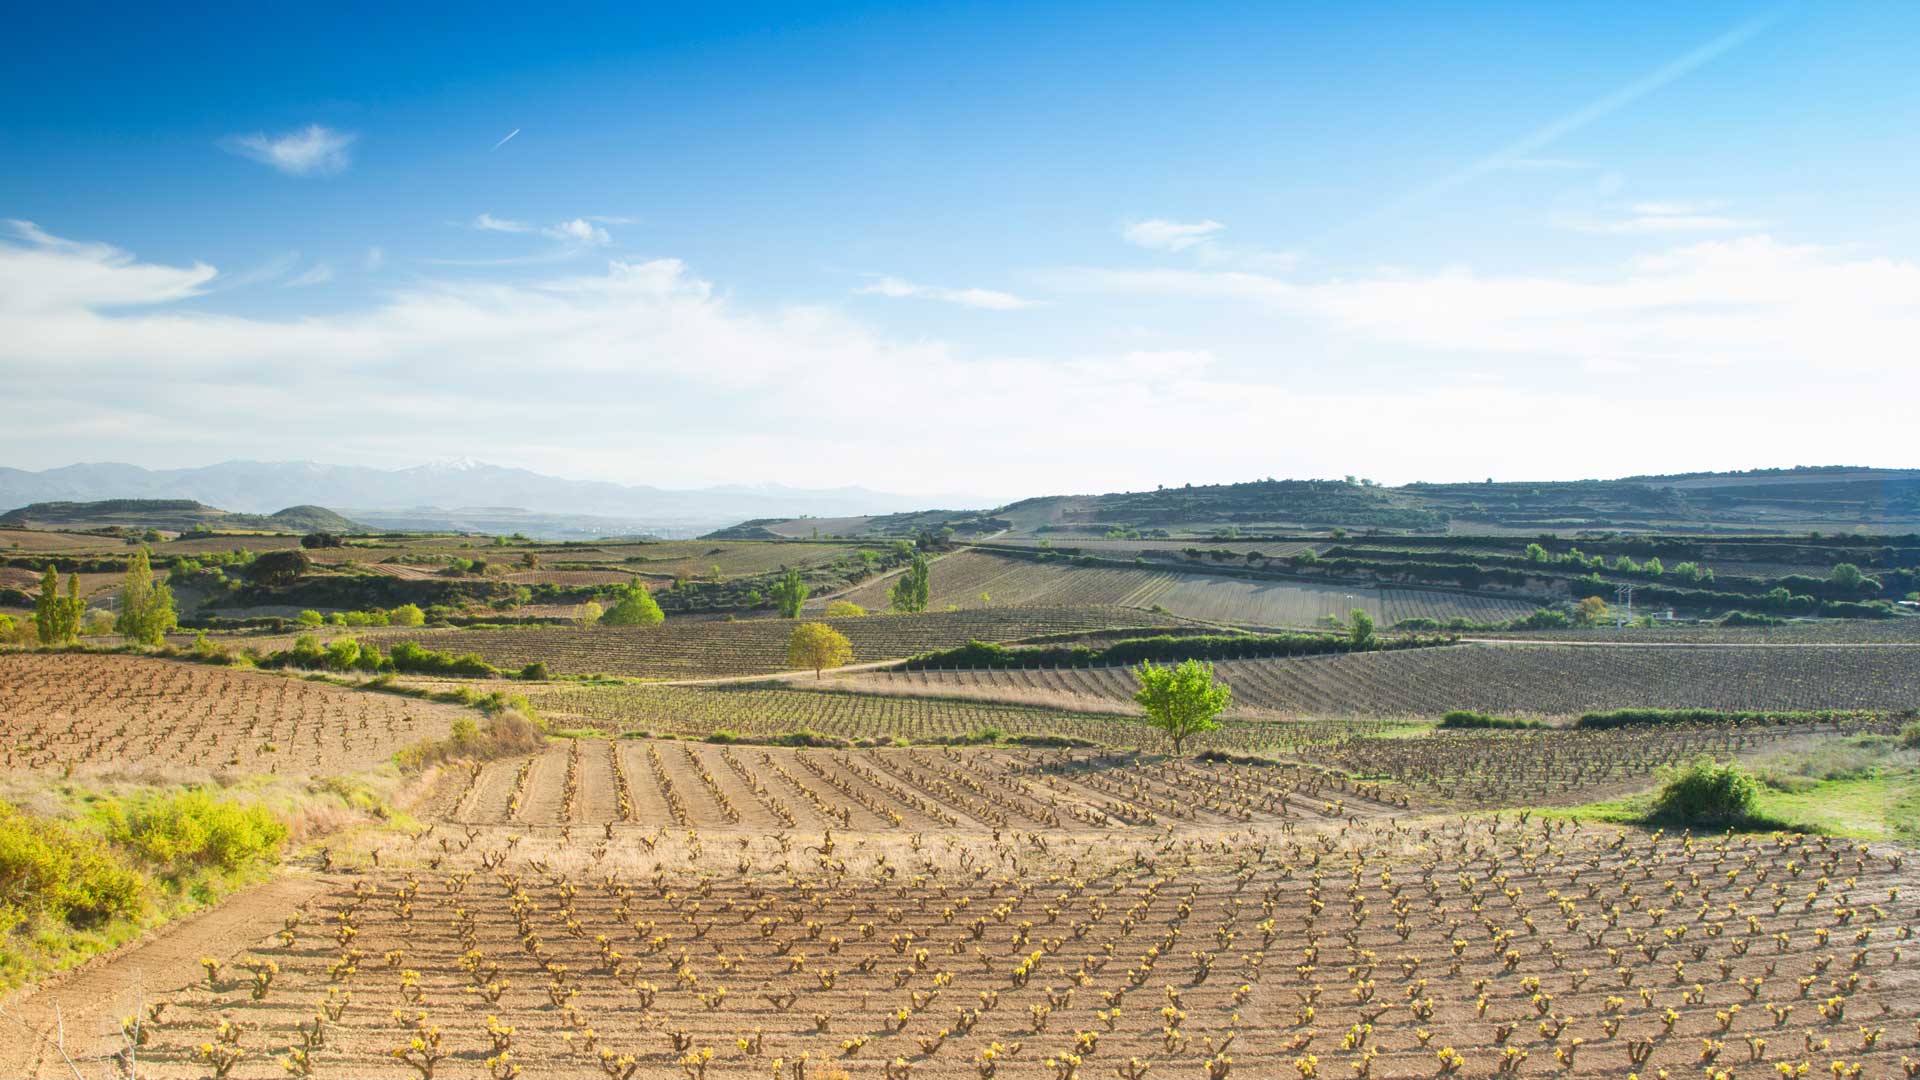 Fotografía de Jorge Comi de los viñedos de Bodegas Baigorri en Samaniego. Fotografía hecha en Mayo.